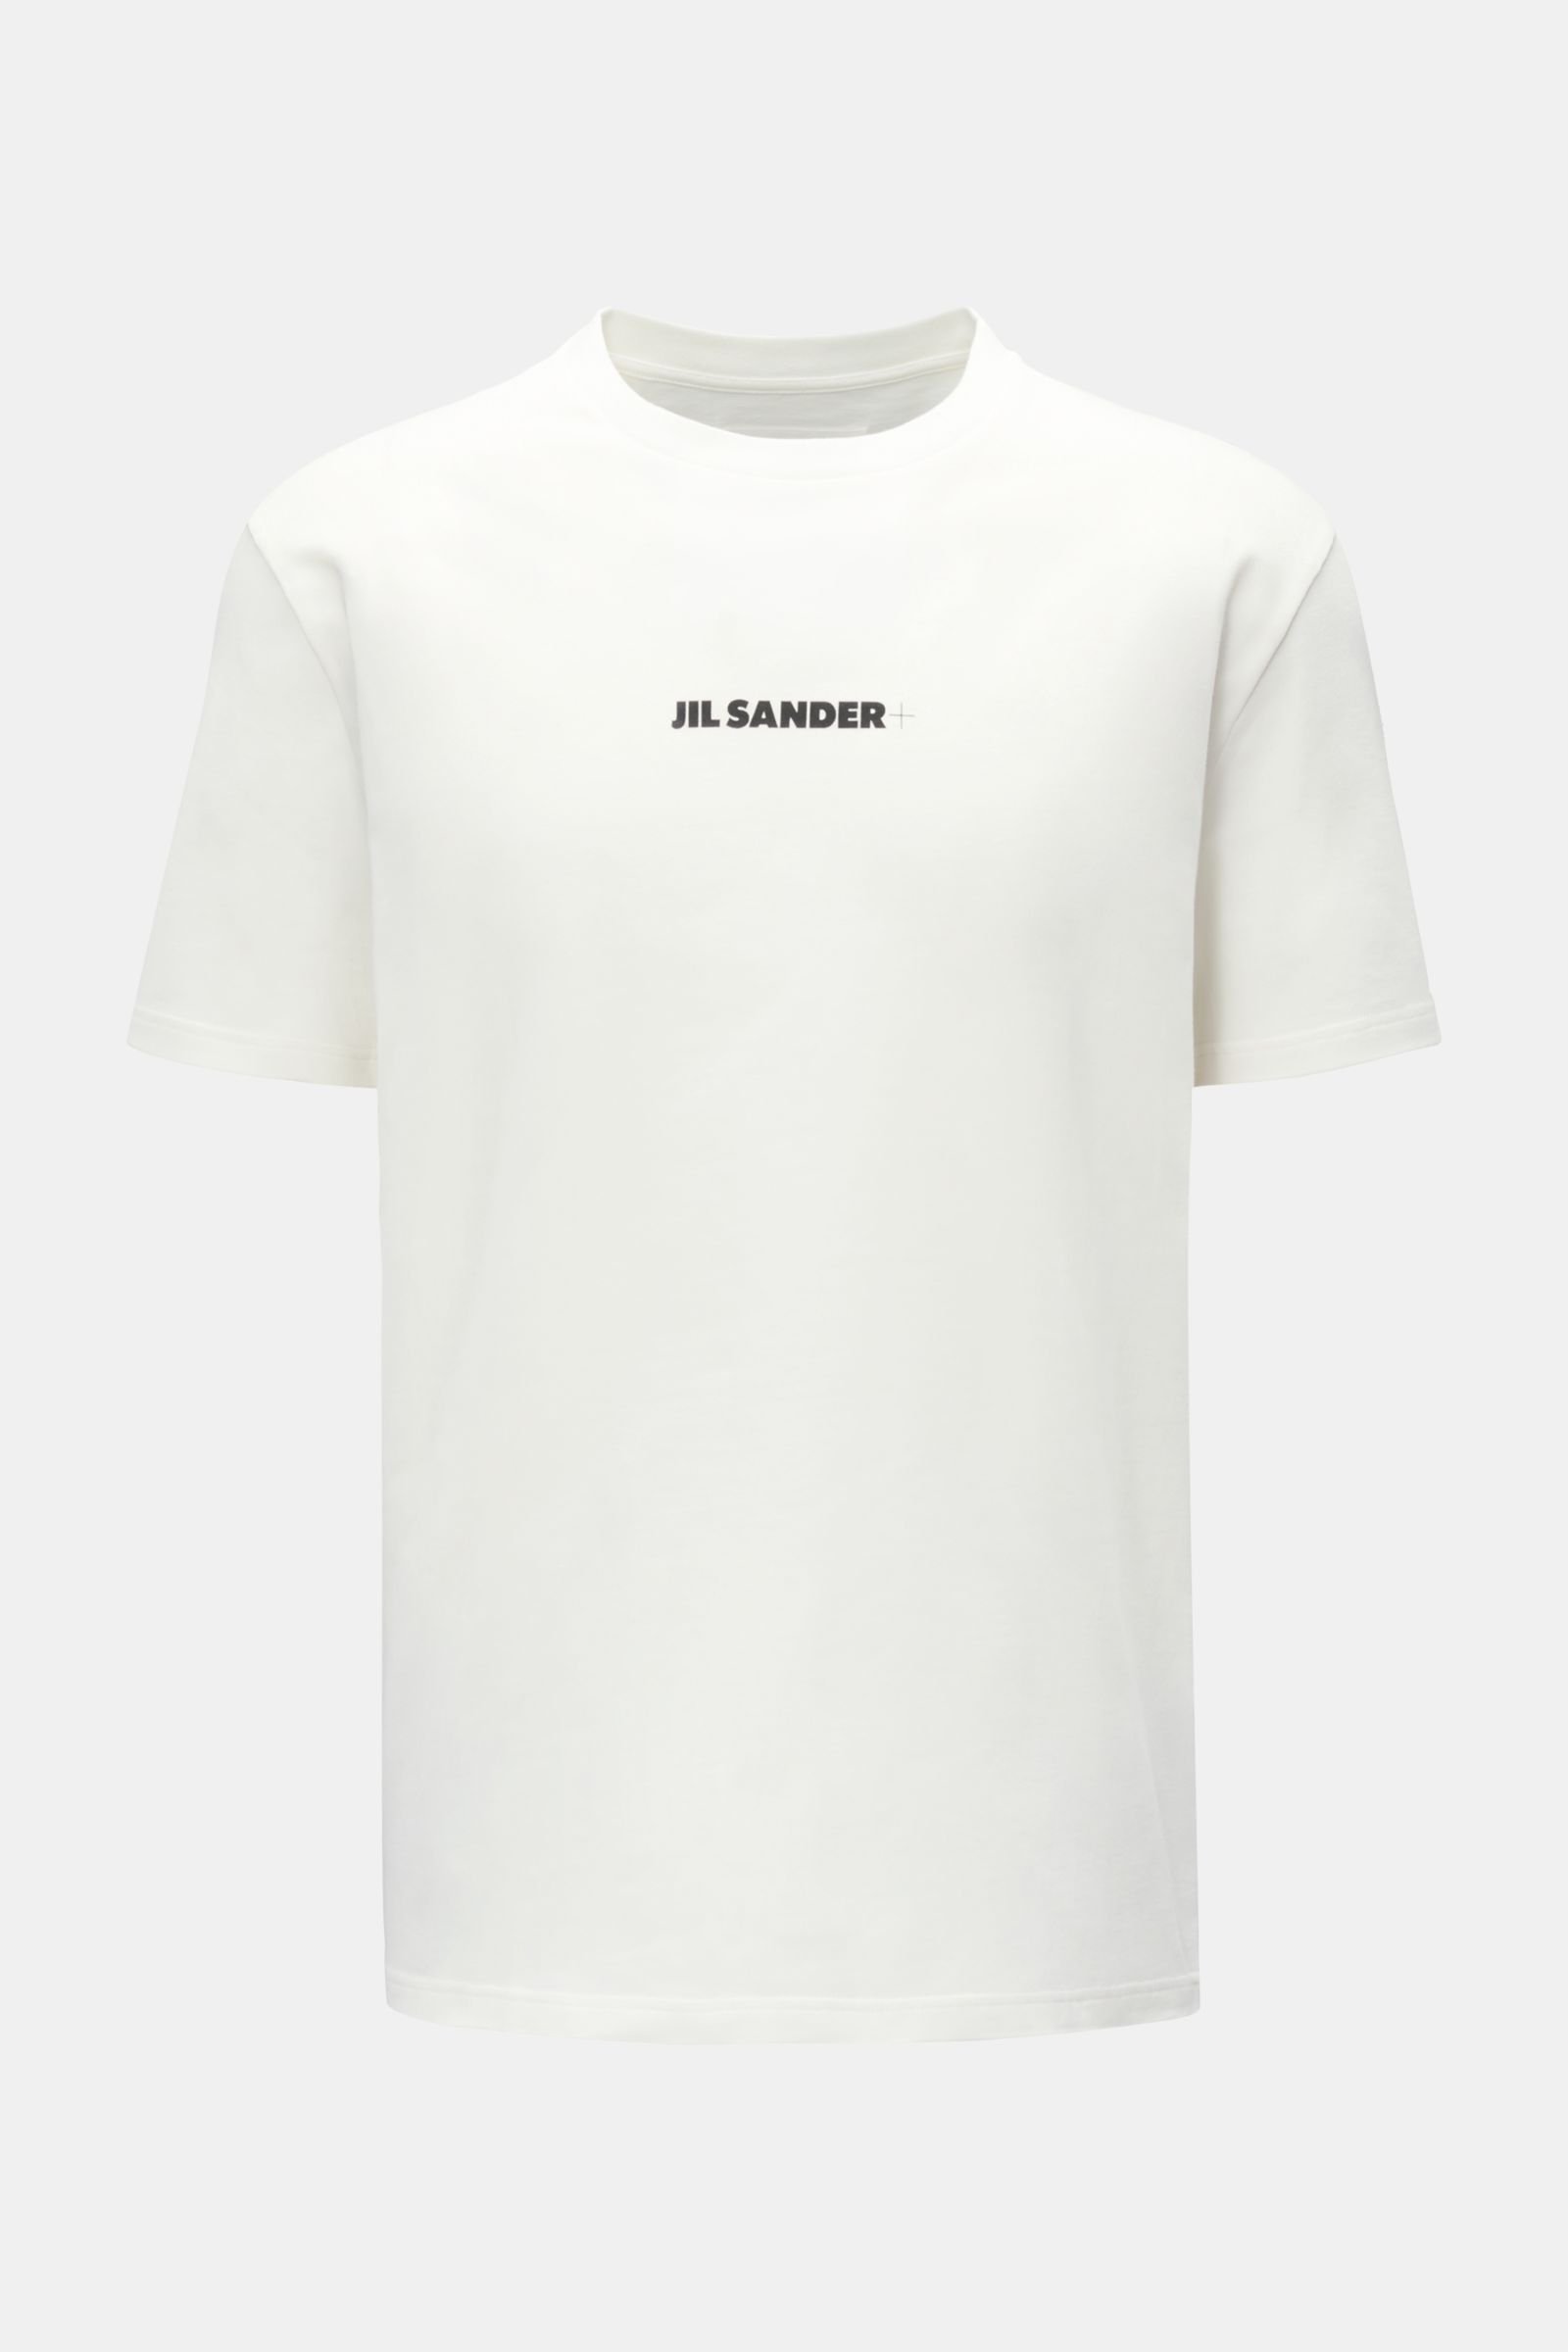 JIL SANDER Rundhals-T-Shirt offwhite | BRAUN Hamburg